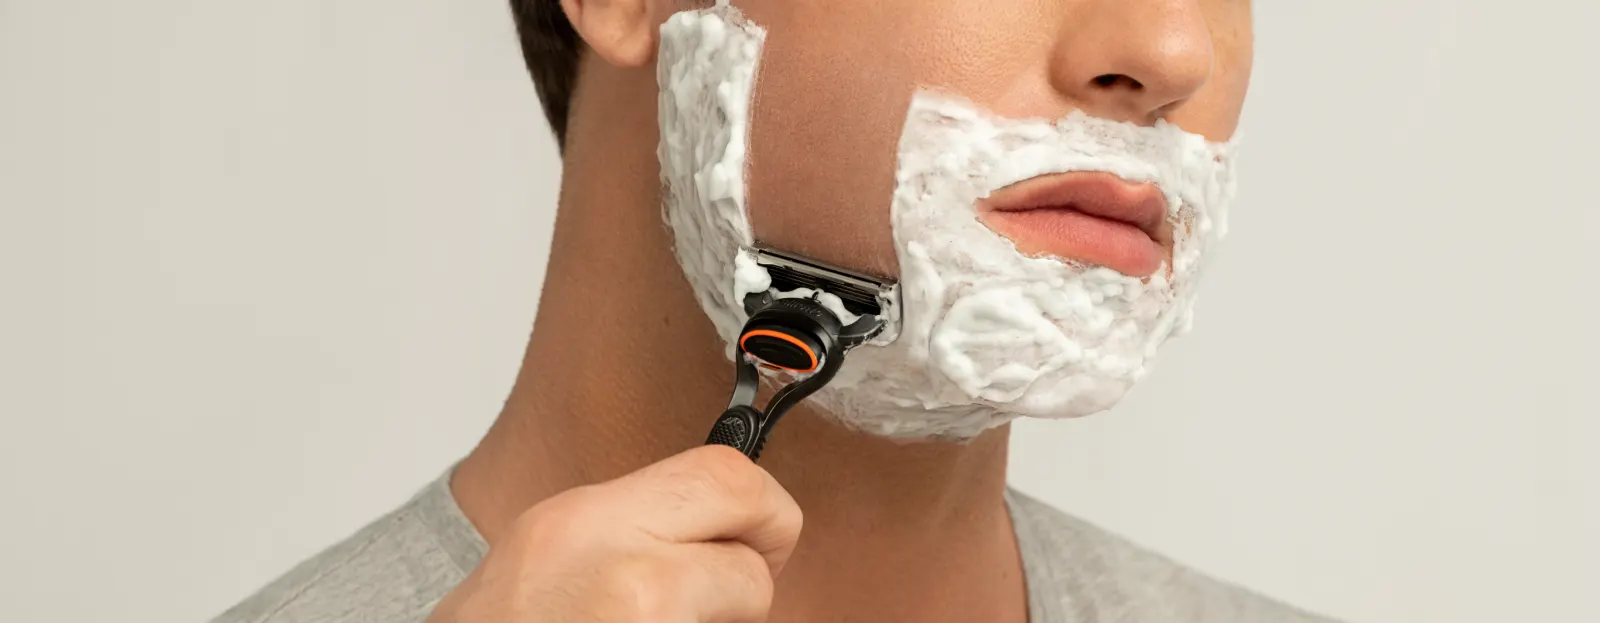 Consejos para afeitarse una barba gruesa o dura